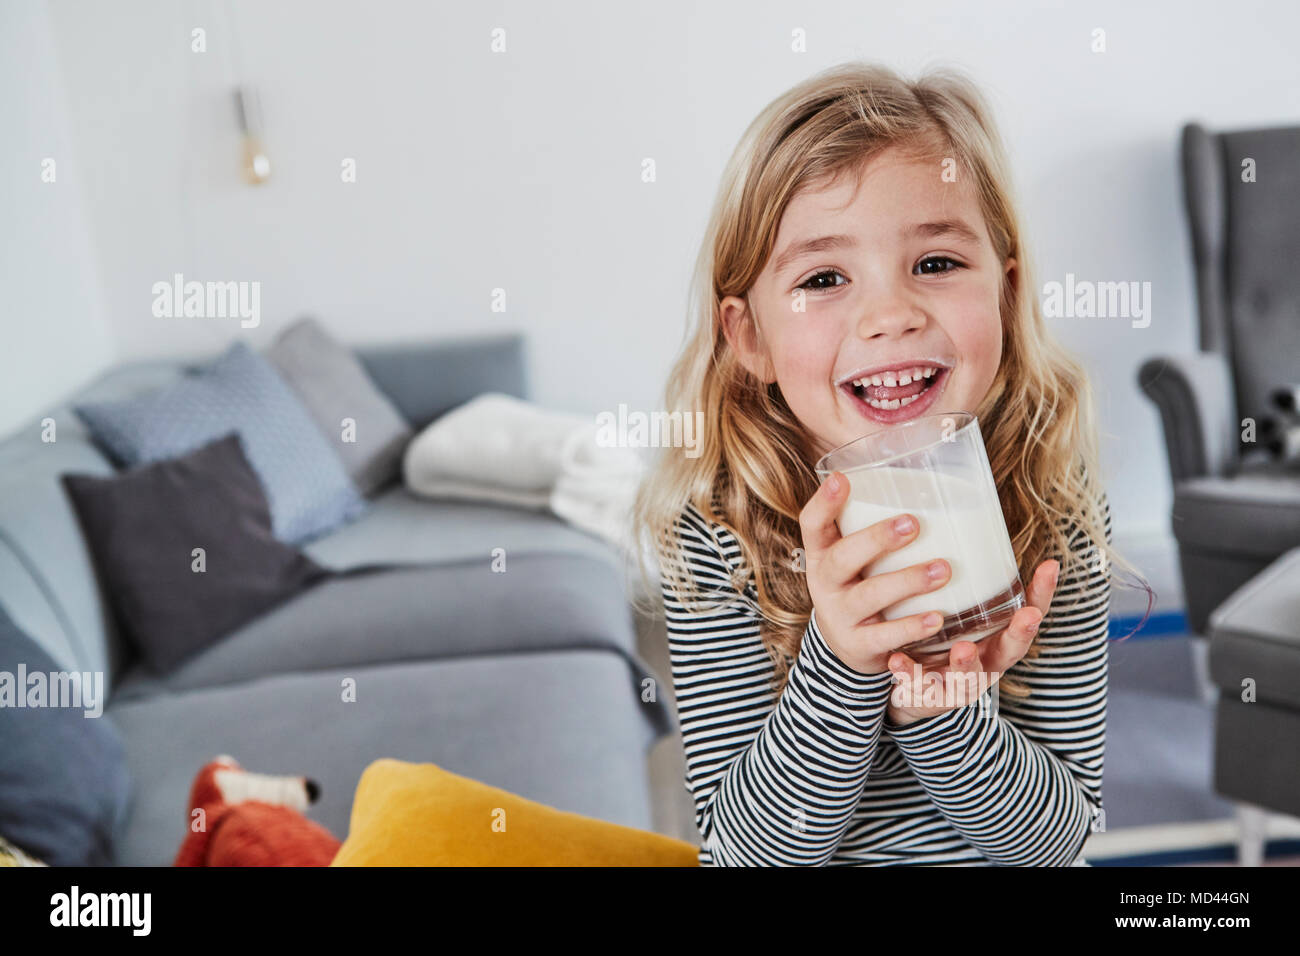 Ritratto di giovane ragazza seduta nel salotto, tenendo in mano un bicchiere di latte, sorridente Foto Stock